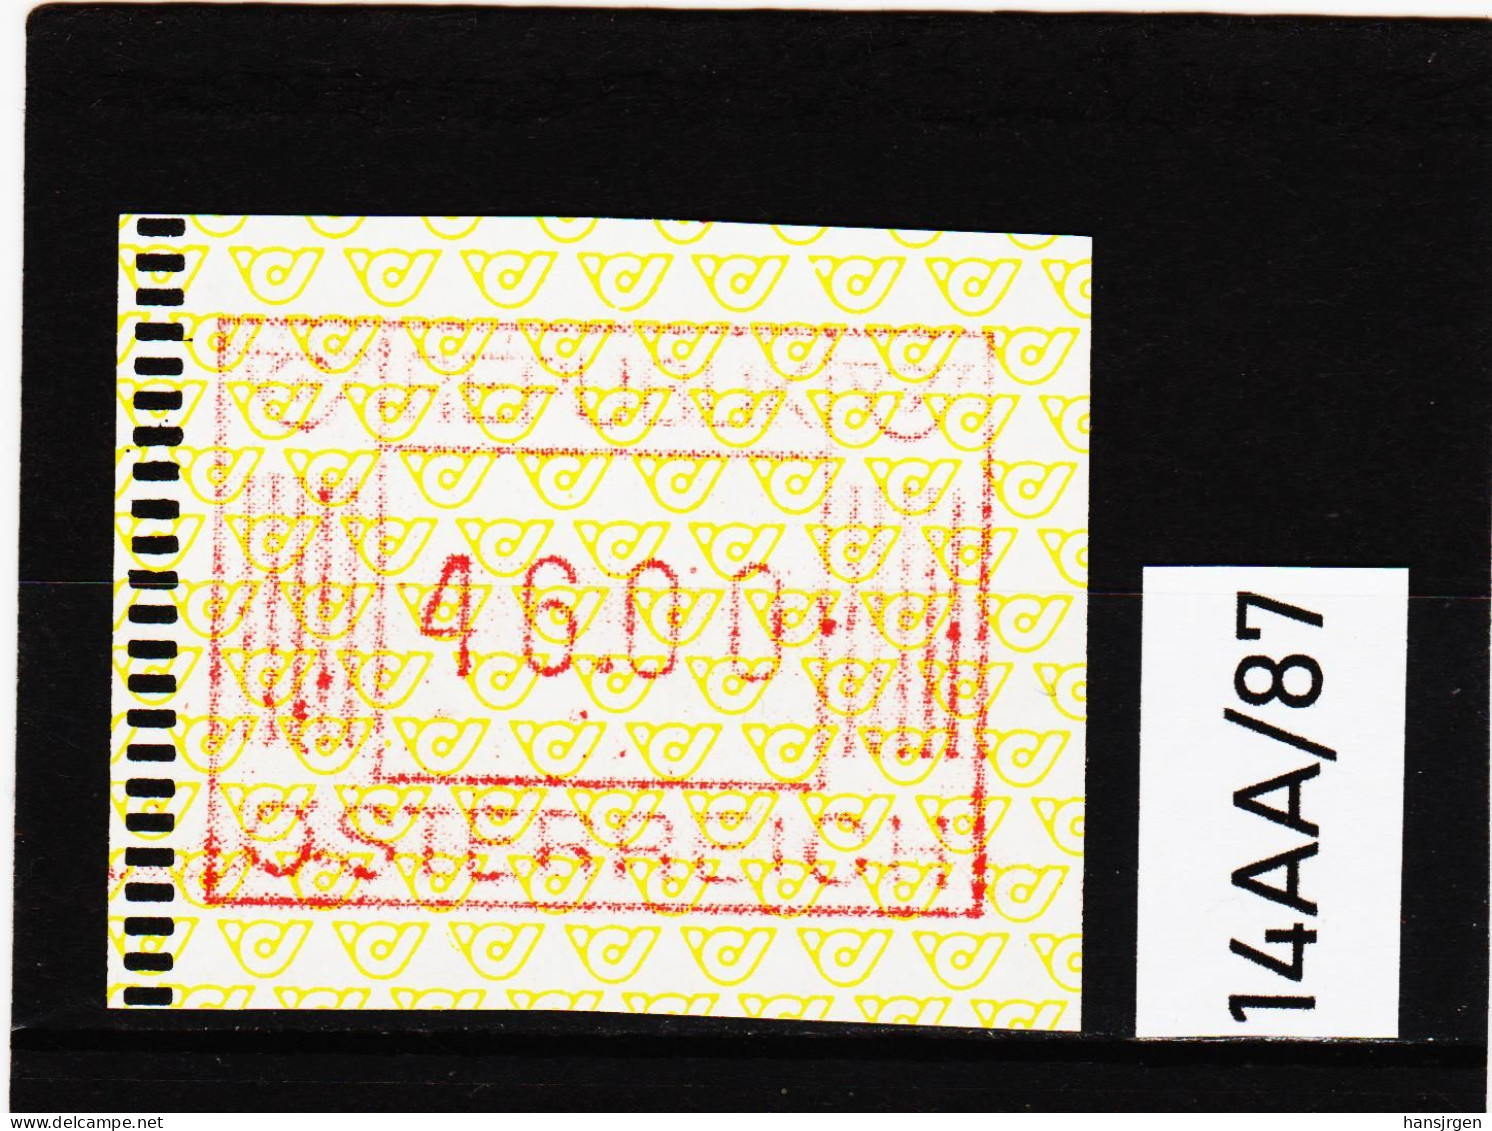 14AA/87  ÖSTERREICH 1983 AUTOMATENMARKEN 1. AUSGABE  46,00 SCHILLING   ** Postfrisch - Machine Labels [ATM]